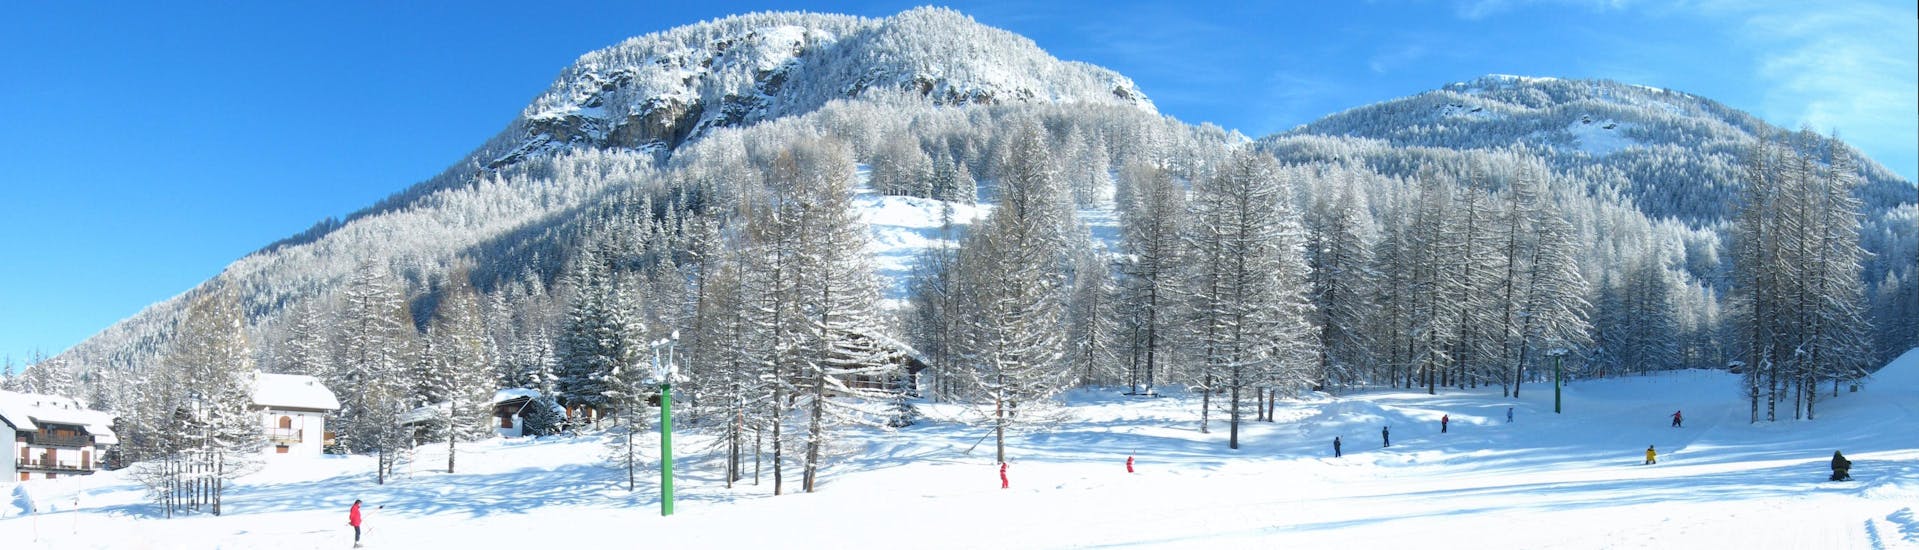 Tijdens een skiles met een skischool in Pragelato heb je een prachtig uitzicht op zonnige bergen.